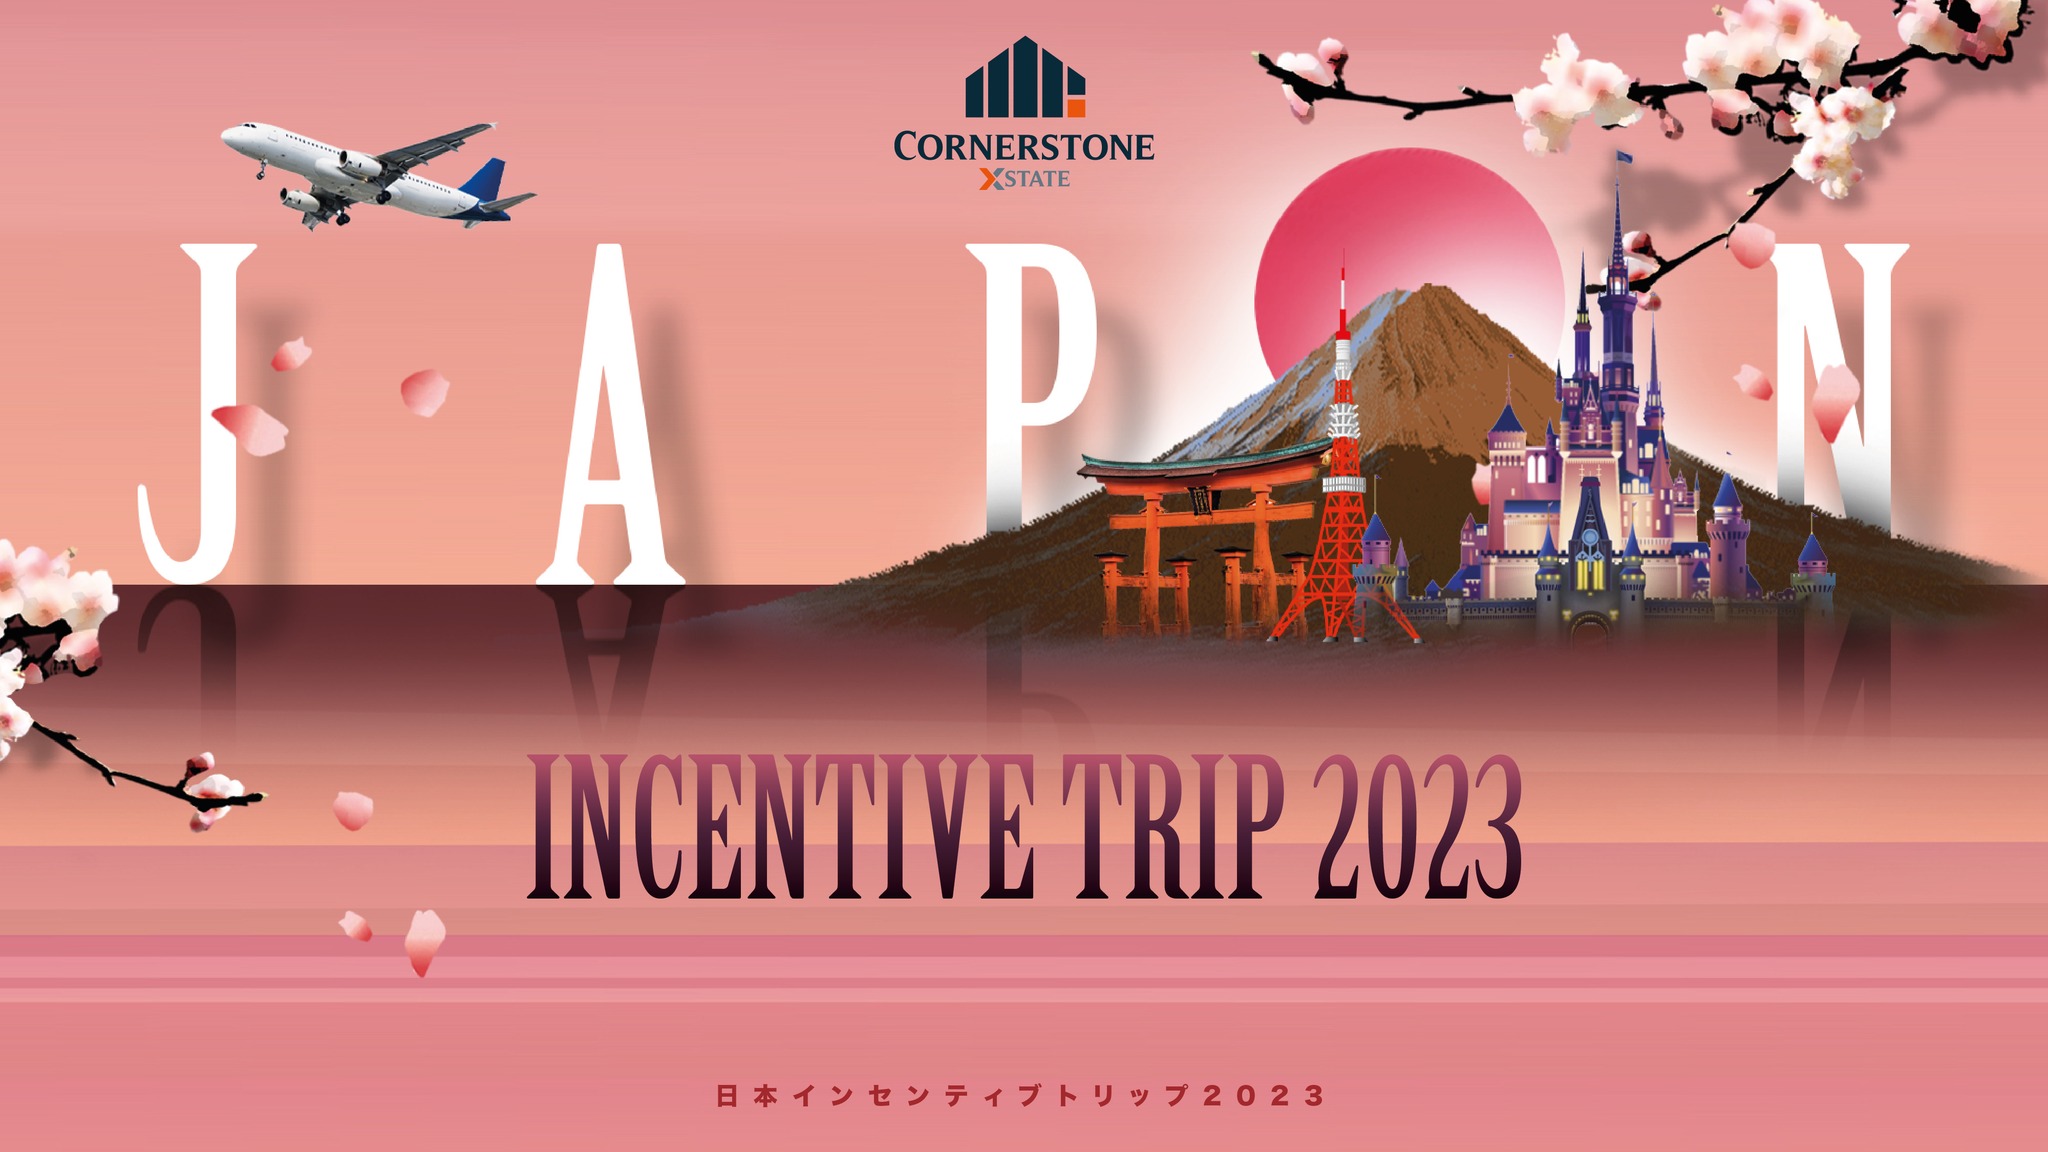 CSX Incentive Trip June 2023